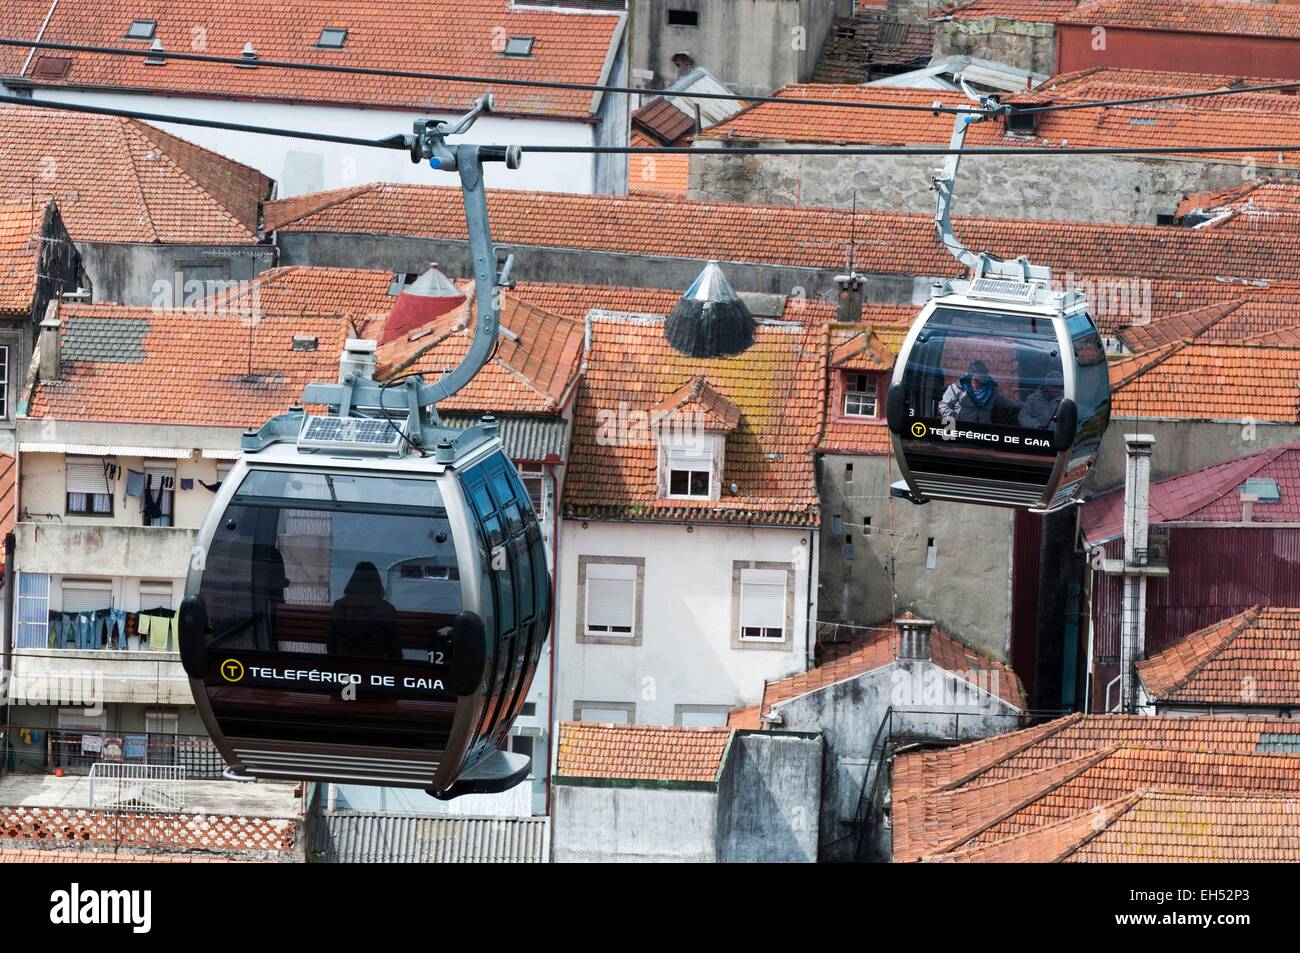 Portugal, North Region, Porto, cable cars above the roofs of Vila Nova de Gaia Stock Photo